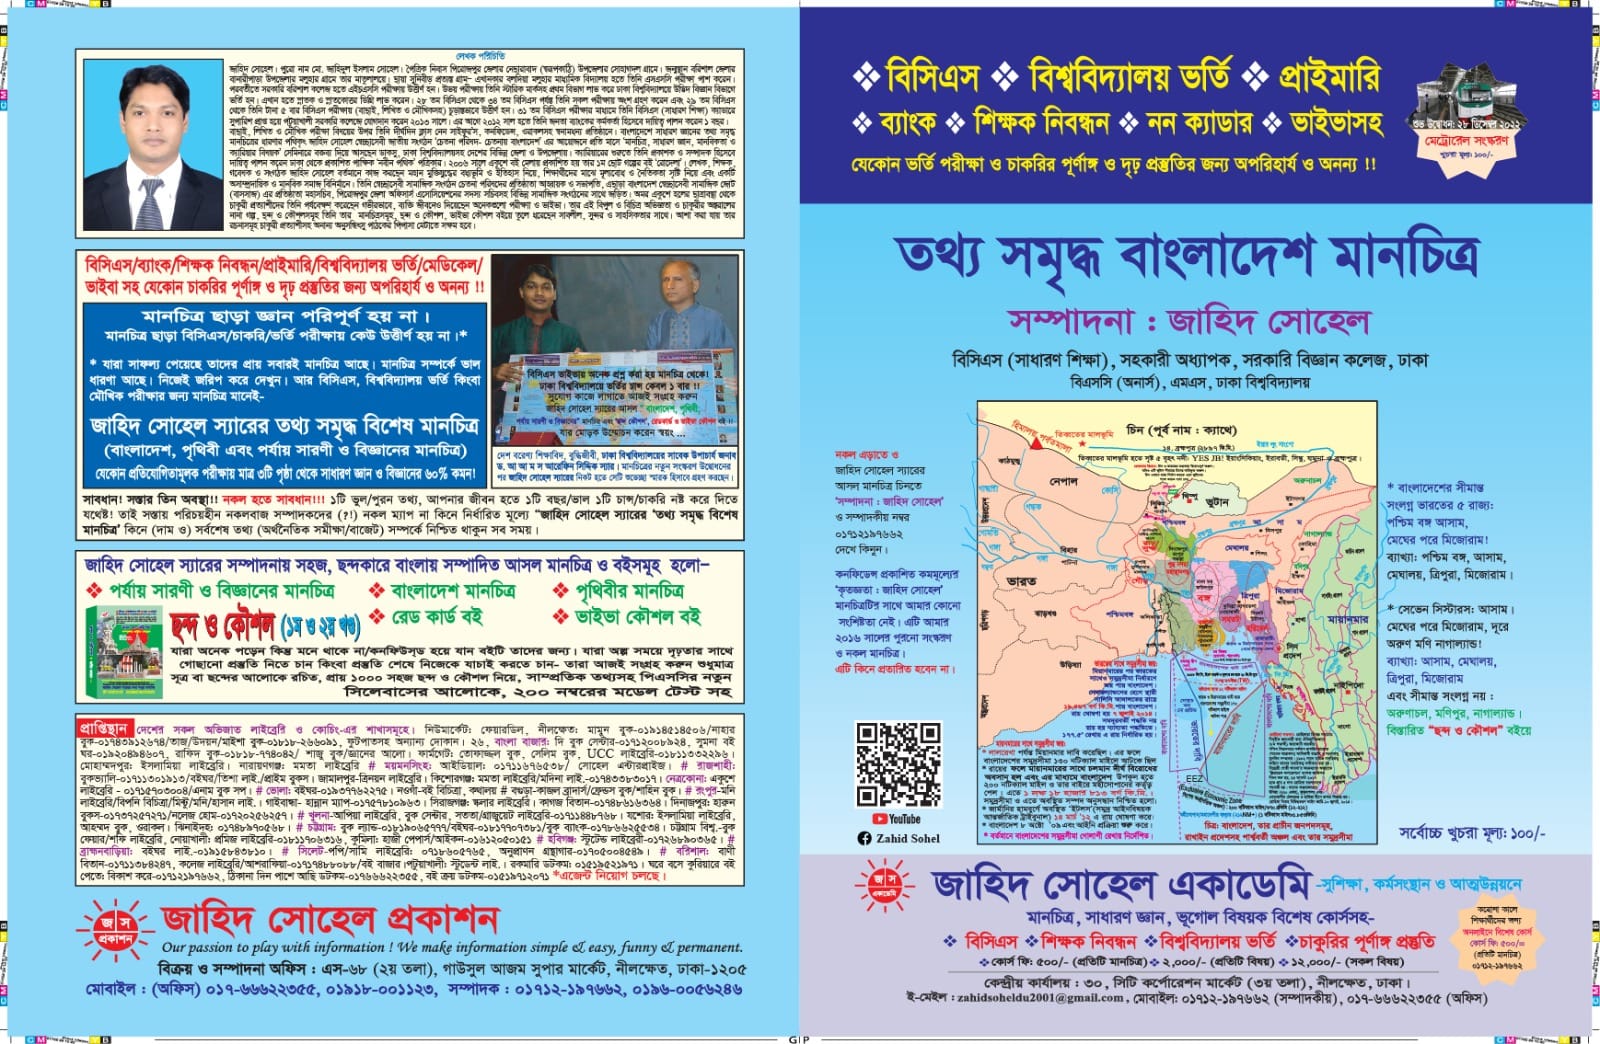 বাংলাদেশ মানচিত্র (ম্যাপ) লেখক- জাহিদ সোহেল / Bangladesh Map by Jahid - Shuhel